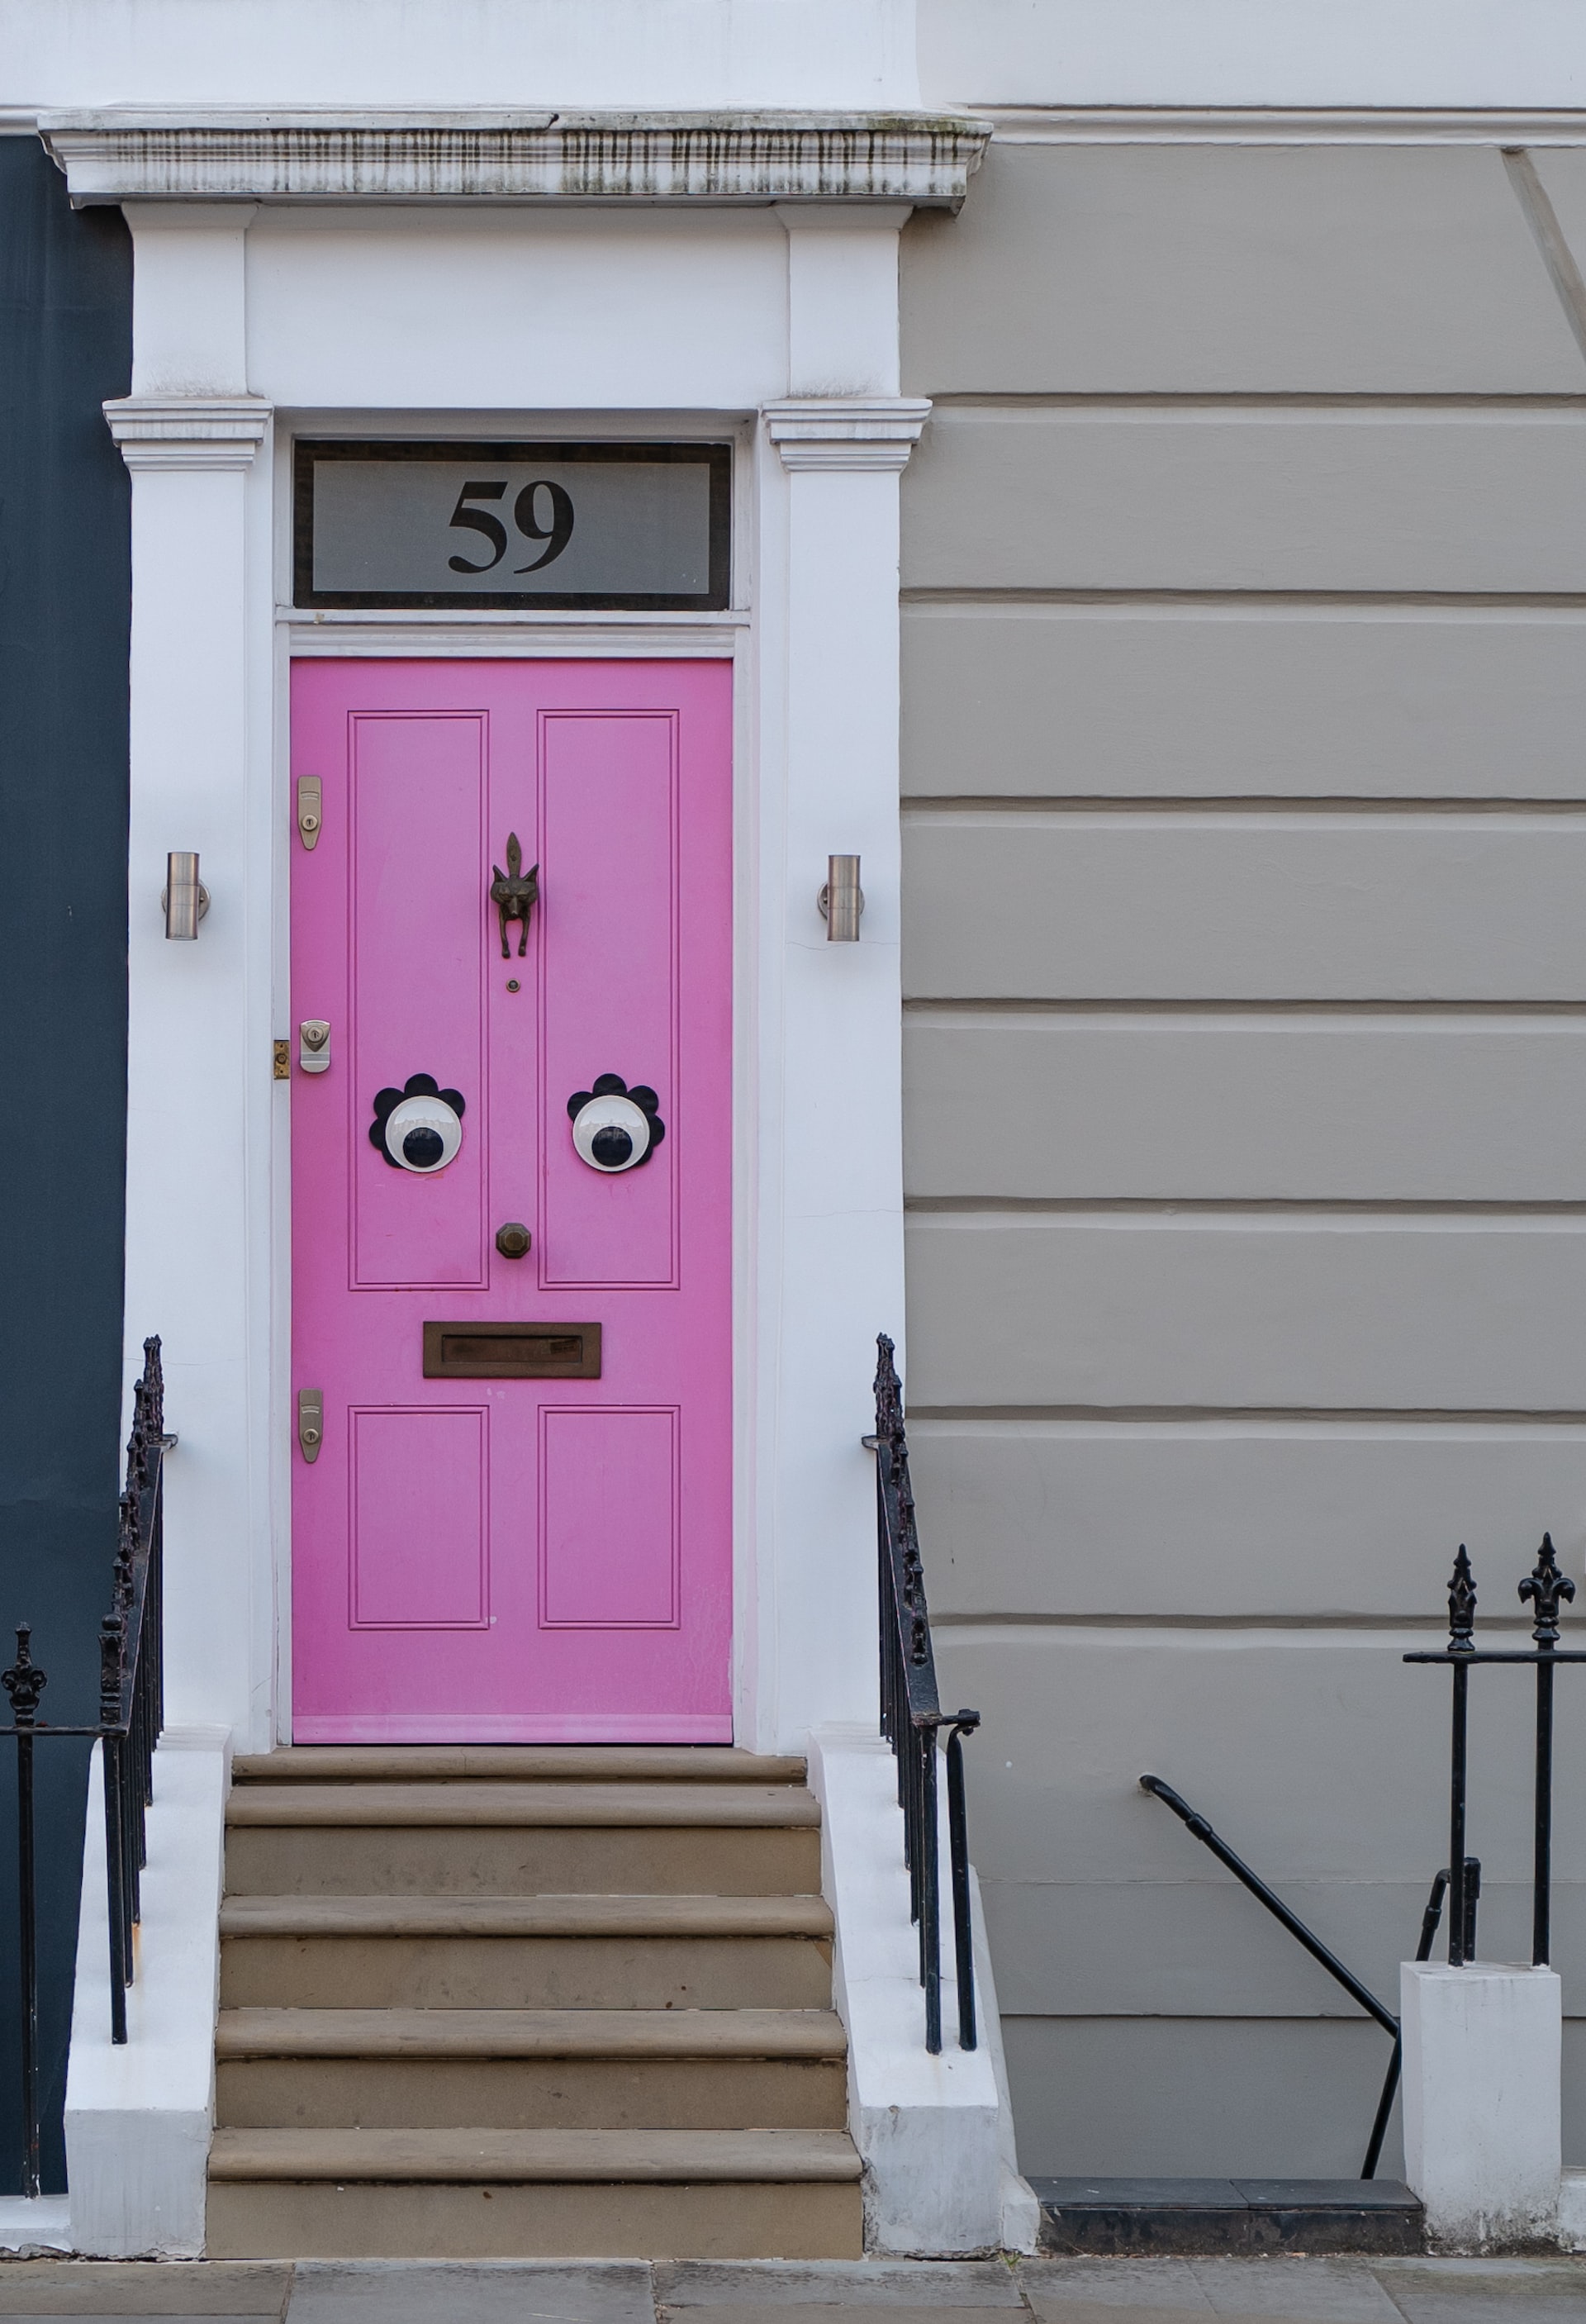 Face in a door